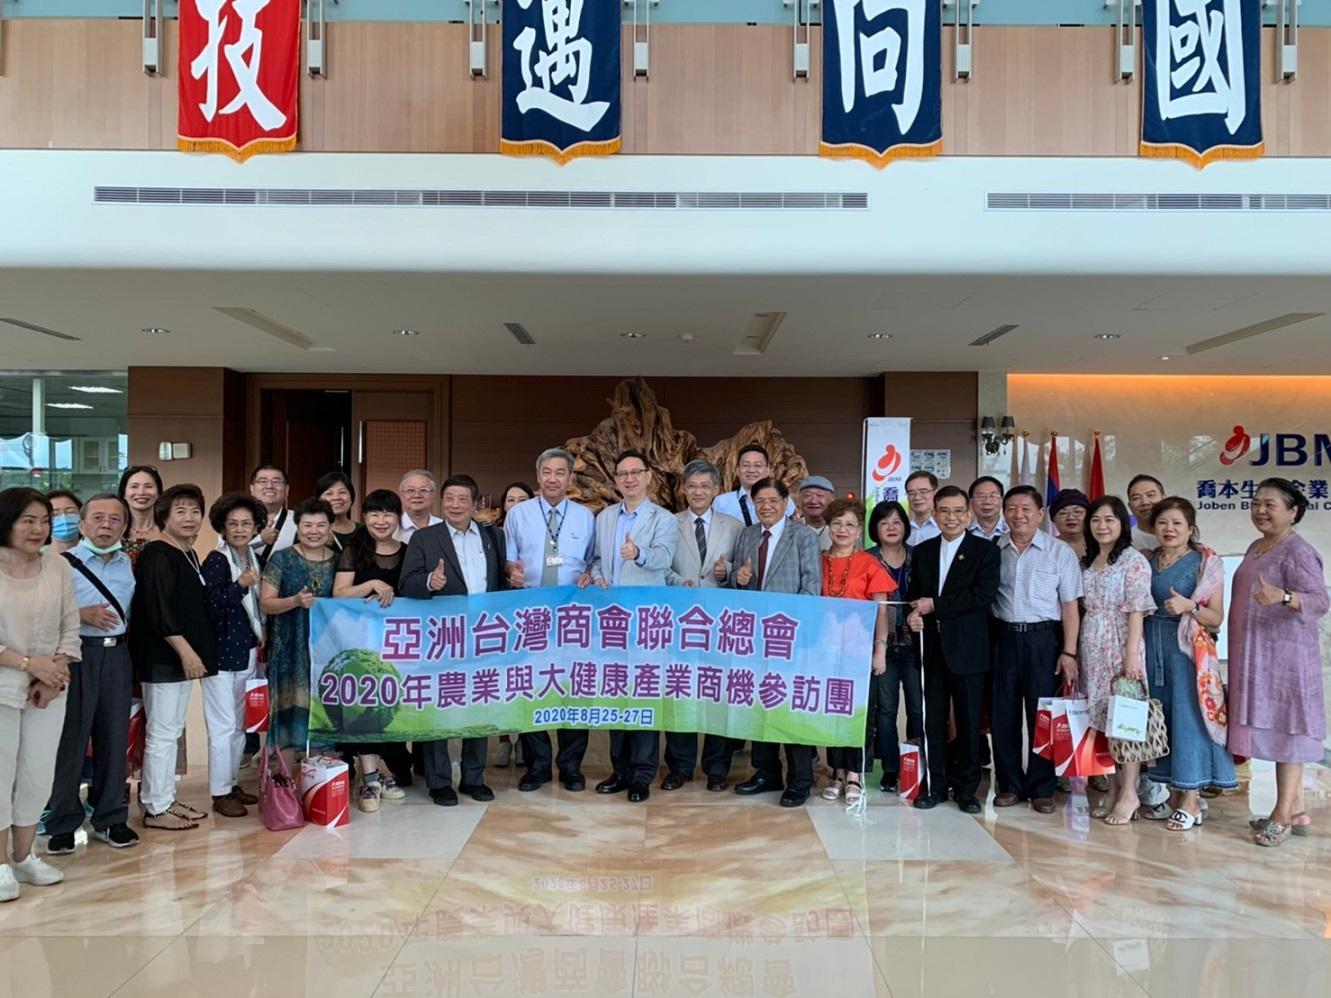 歡迎亞洲台灣商會聯合總會2020農業健康產業商機參訪團蒞臨